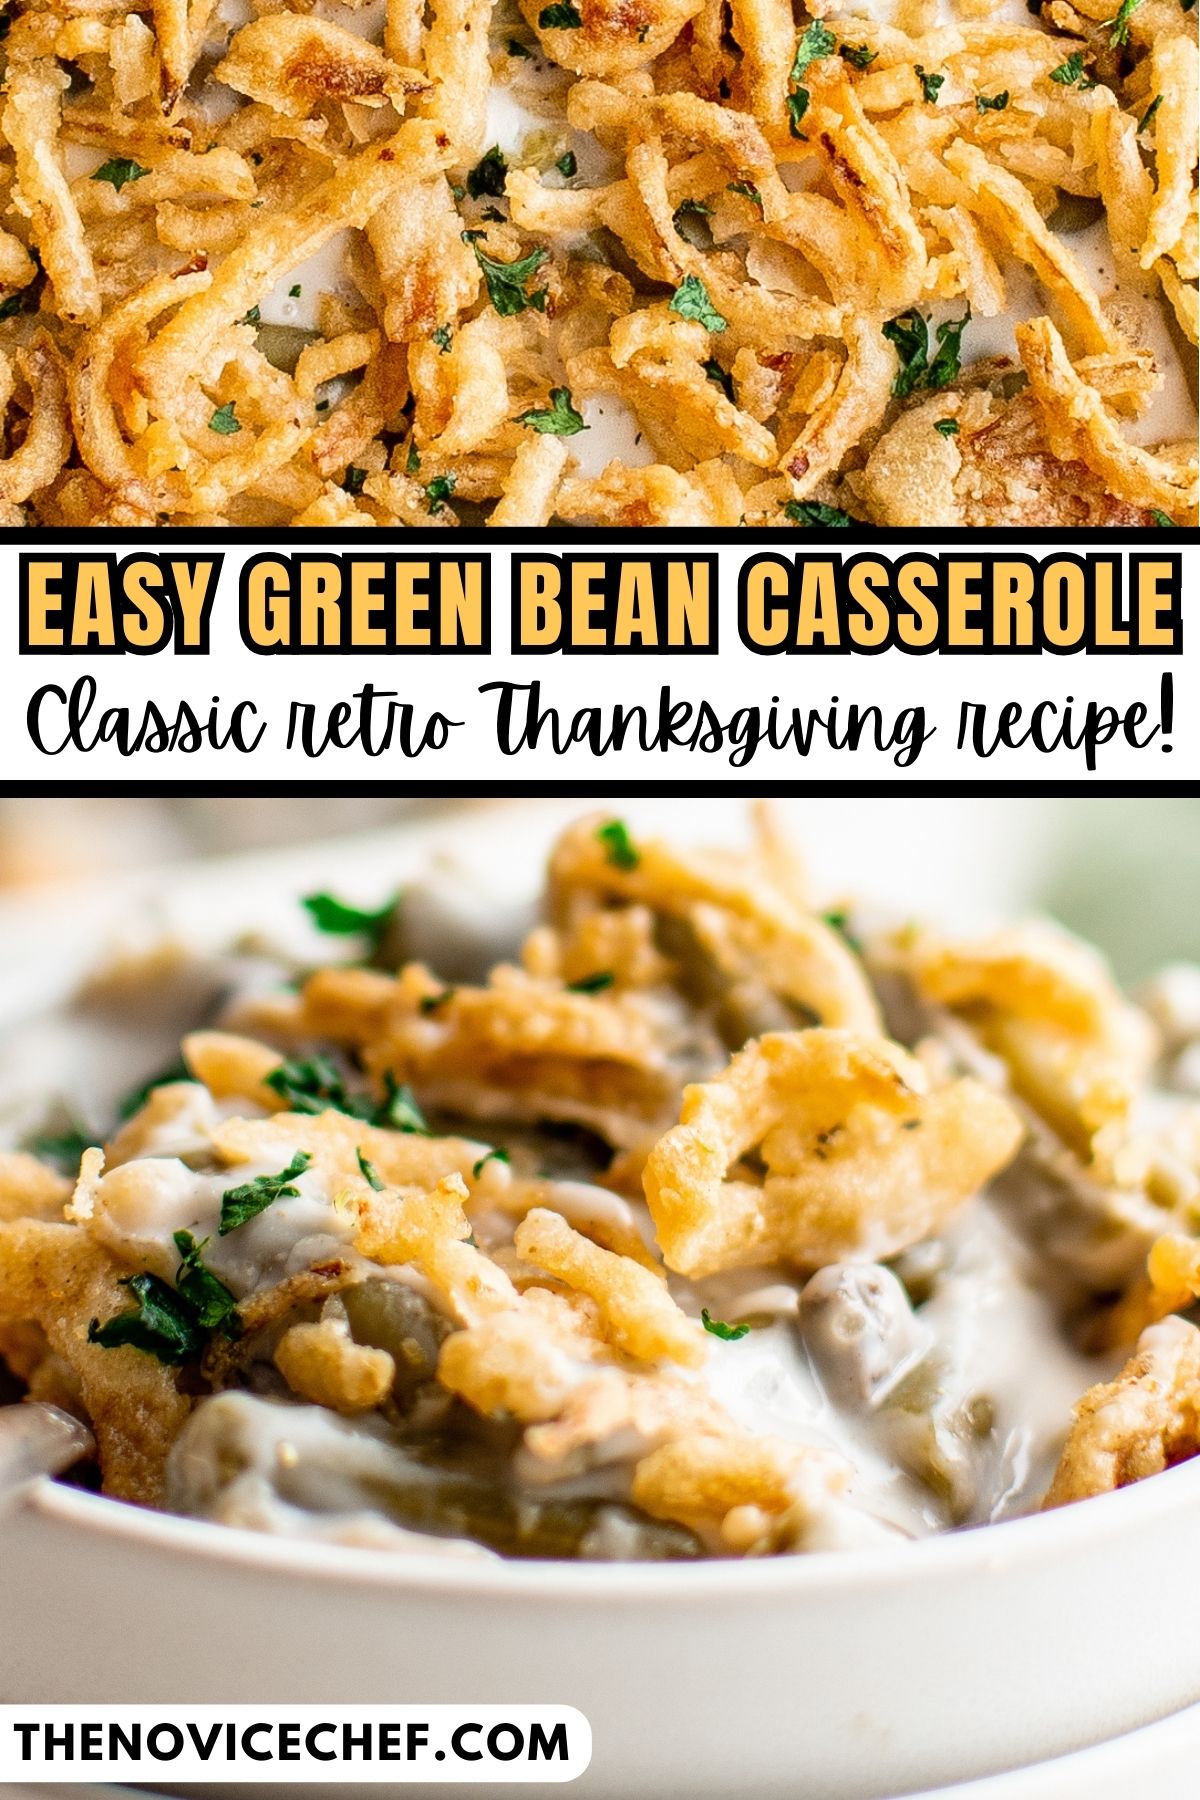 Easy Green Bean Casserole Recipe | The Novice Chef